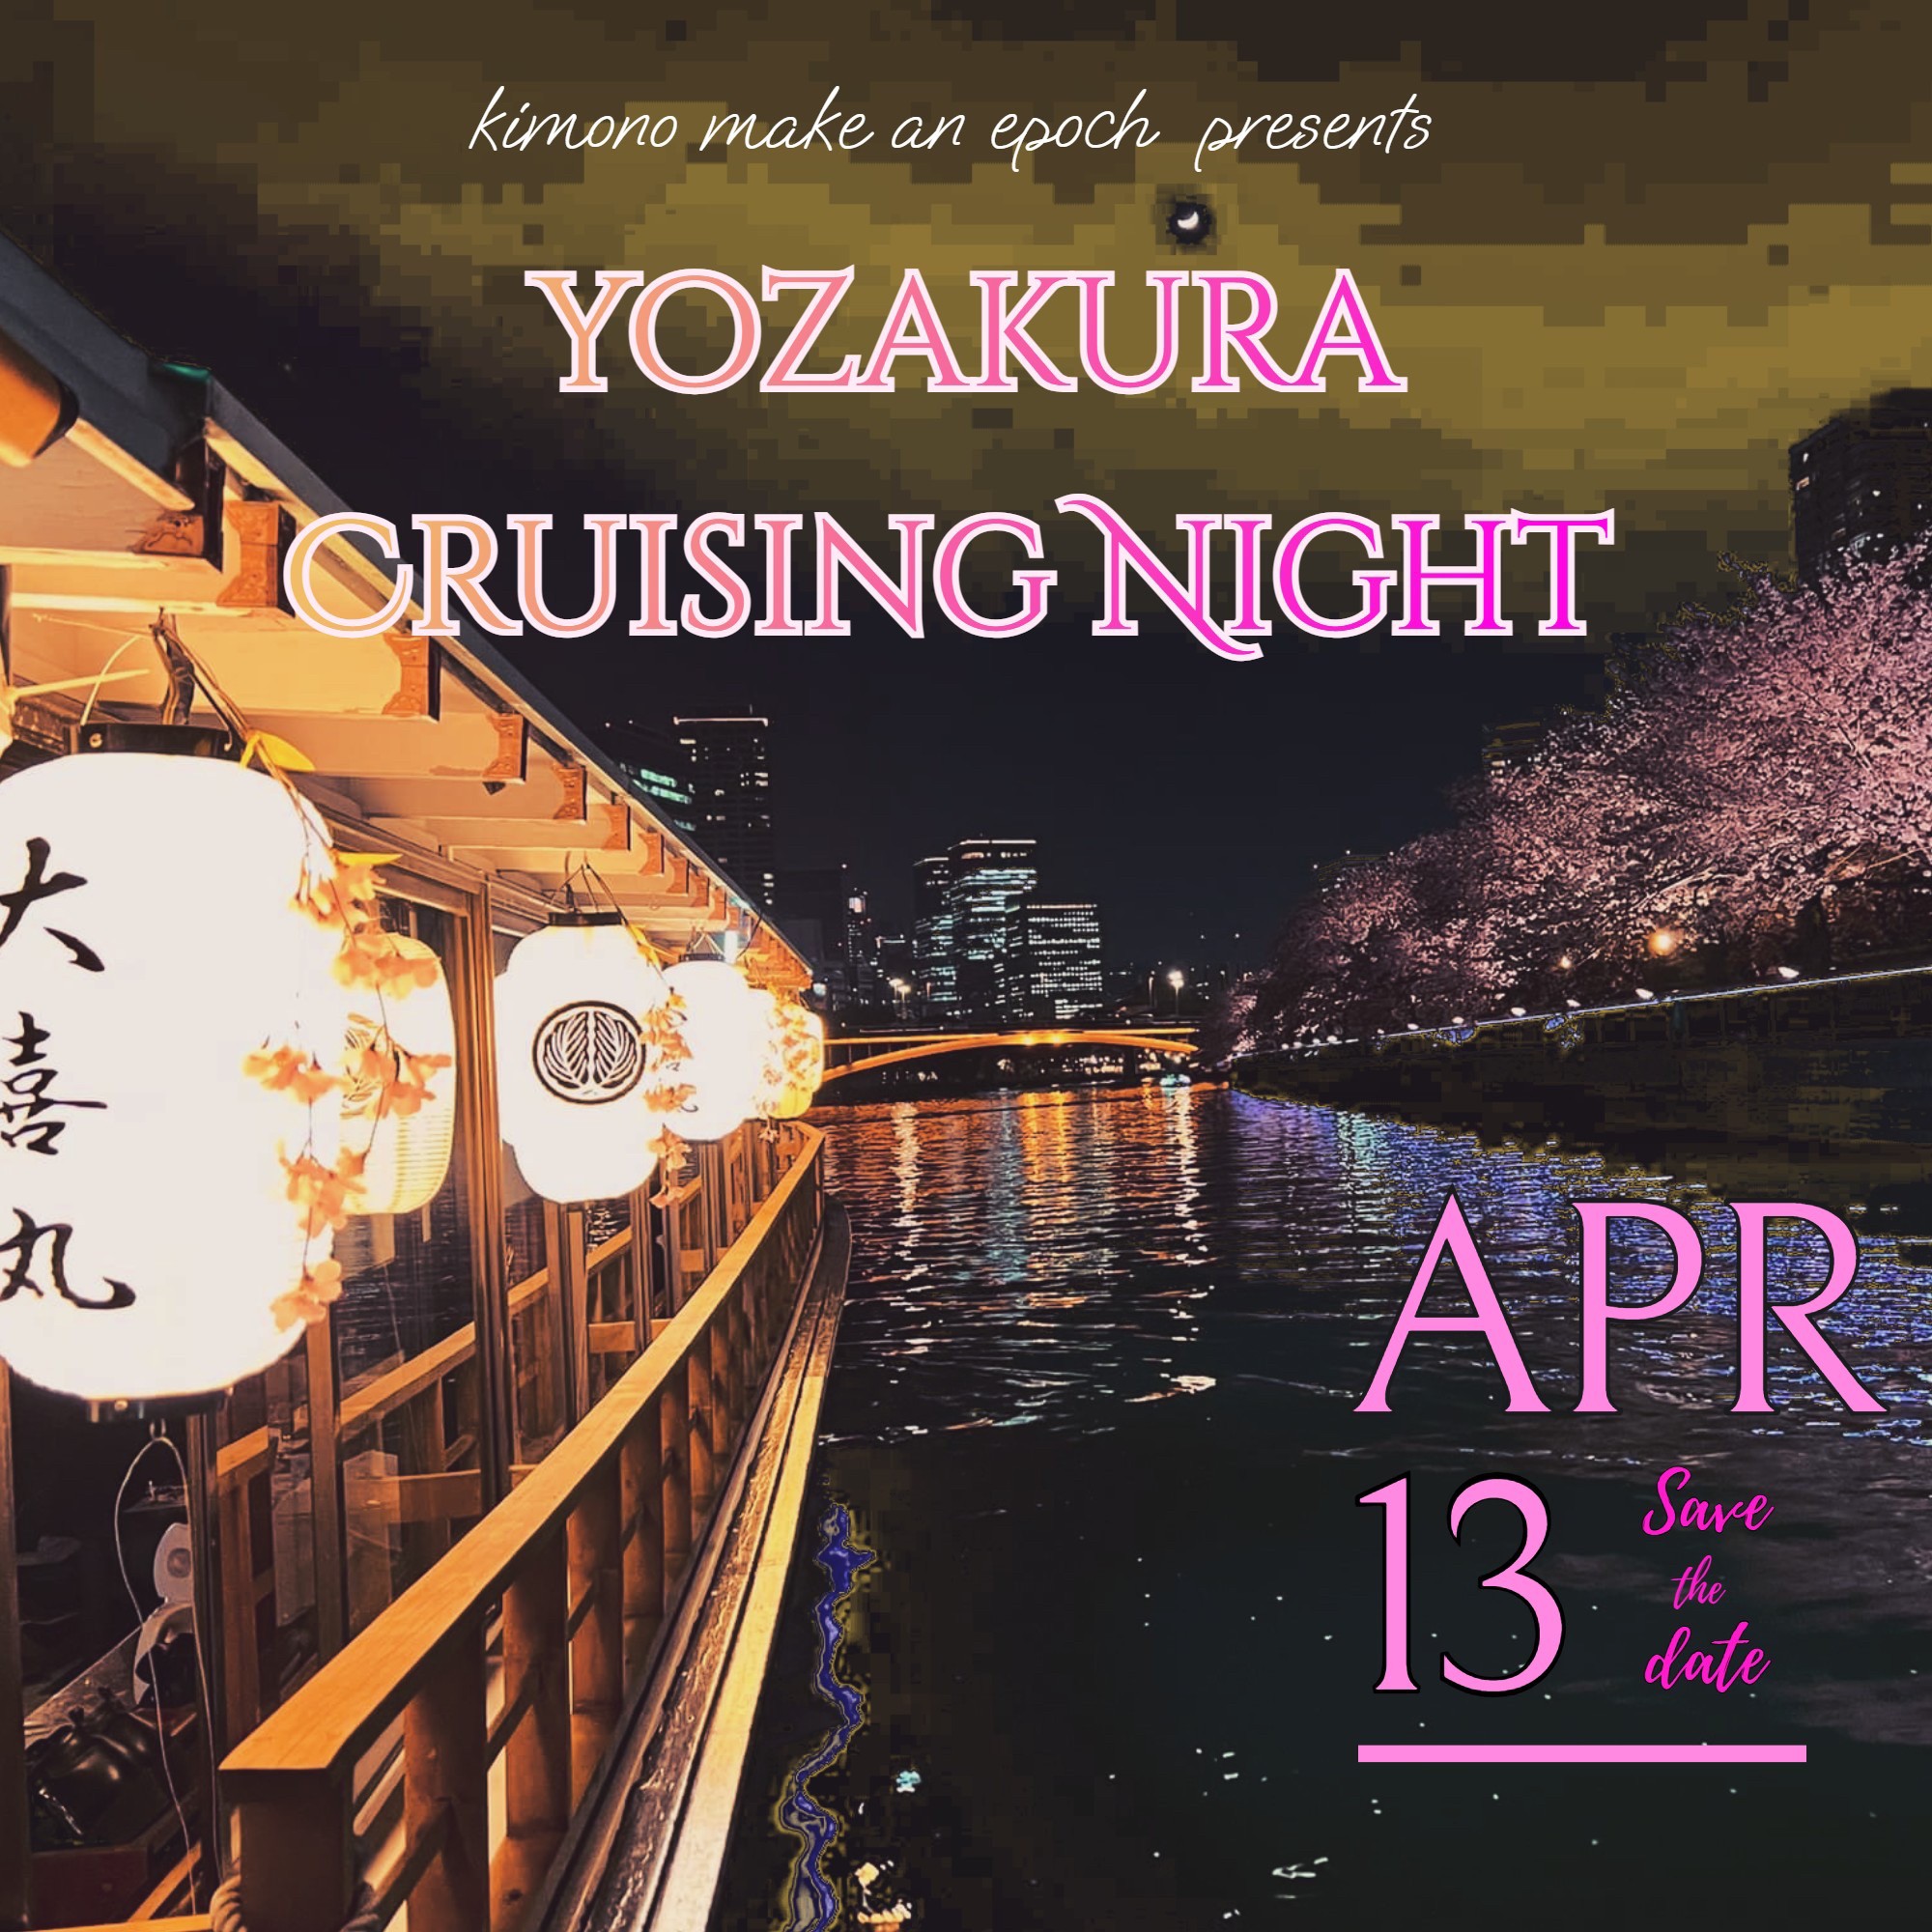 YOZAKURA CRUISING NIGHT